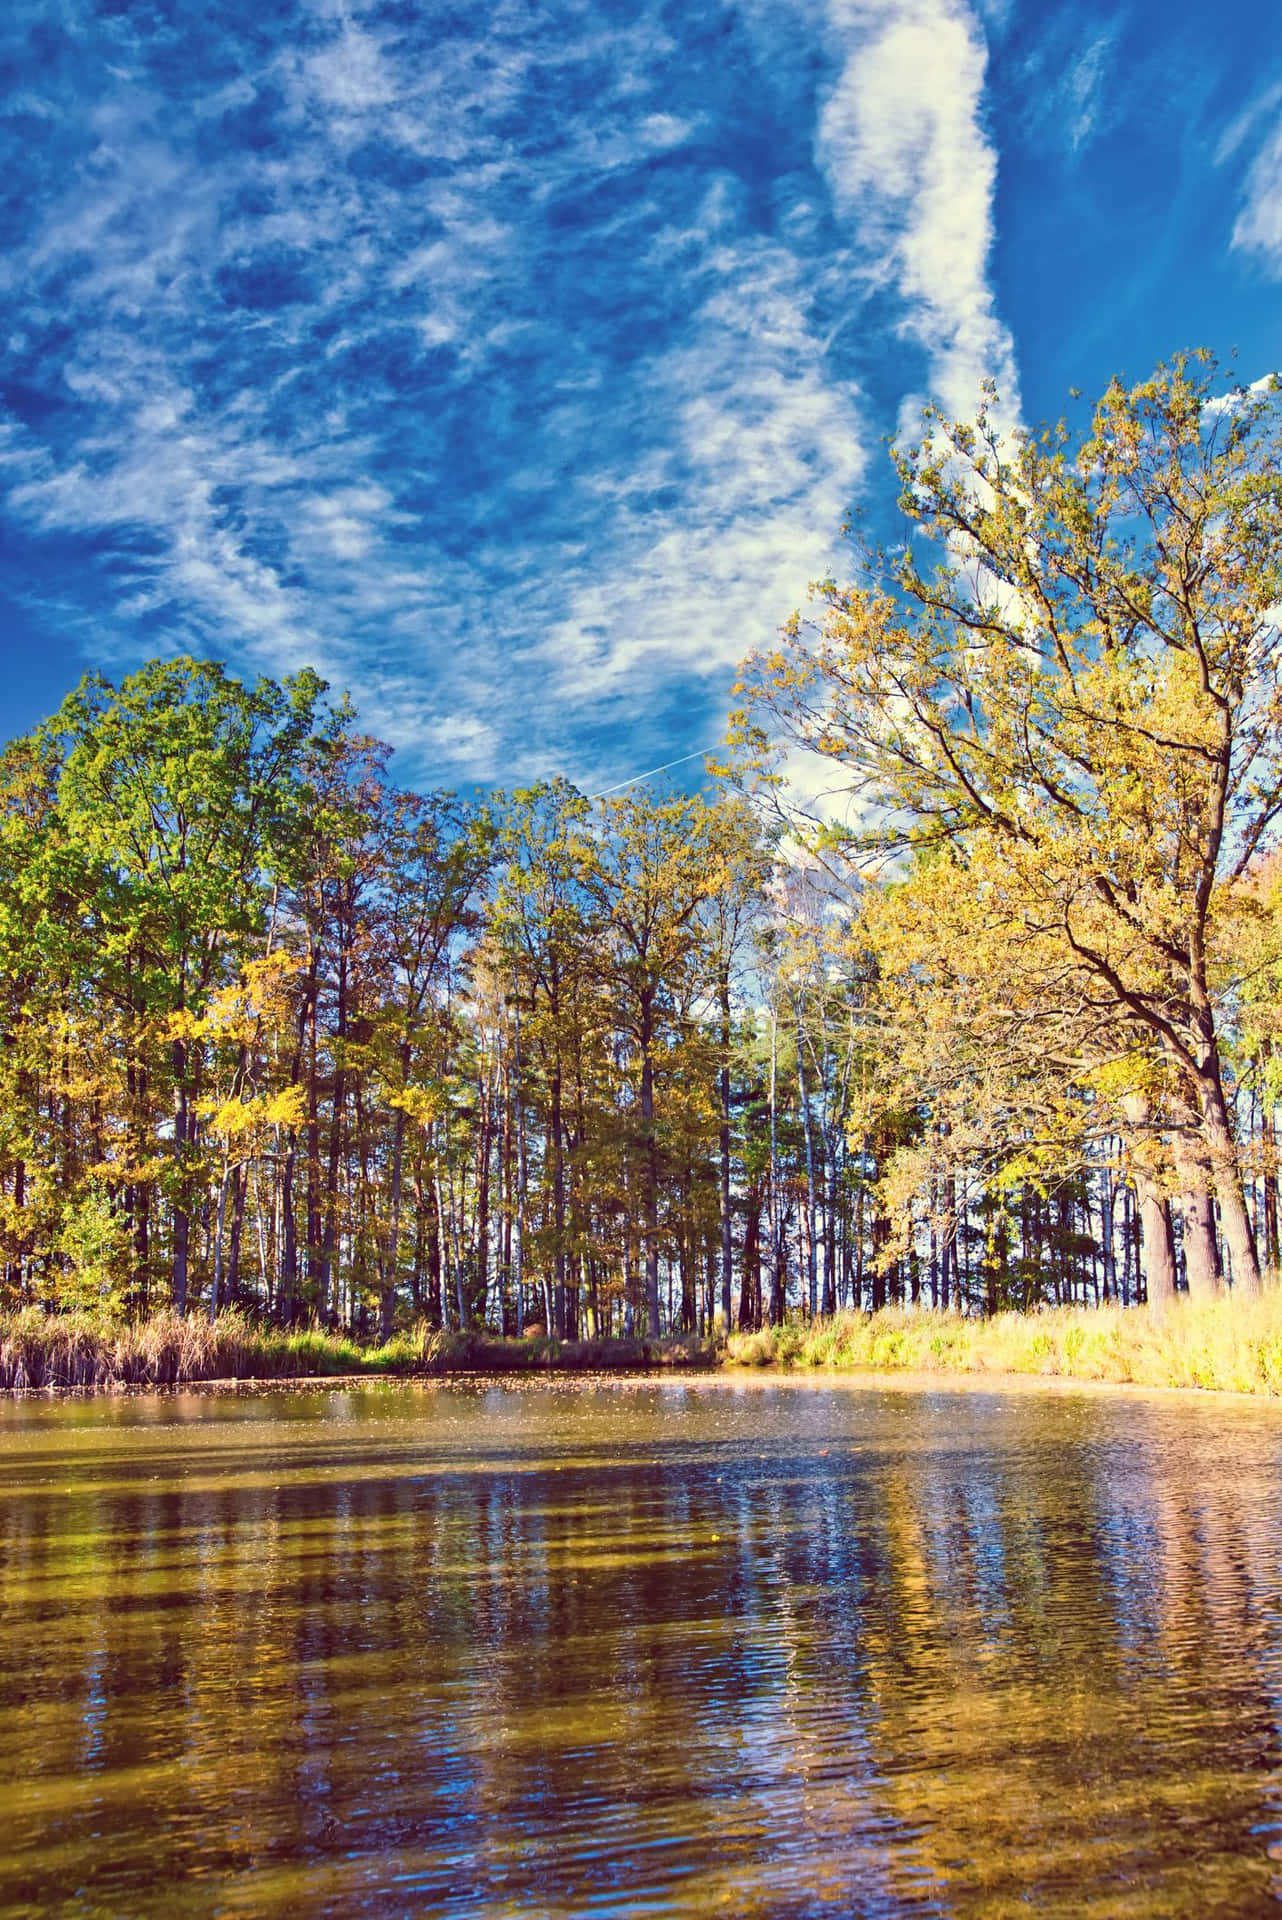 Schönesbild Von Herbstbäumen Am Fluss